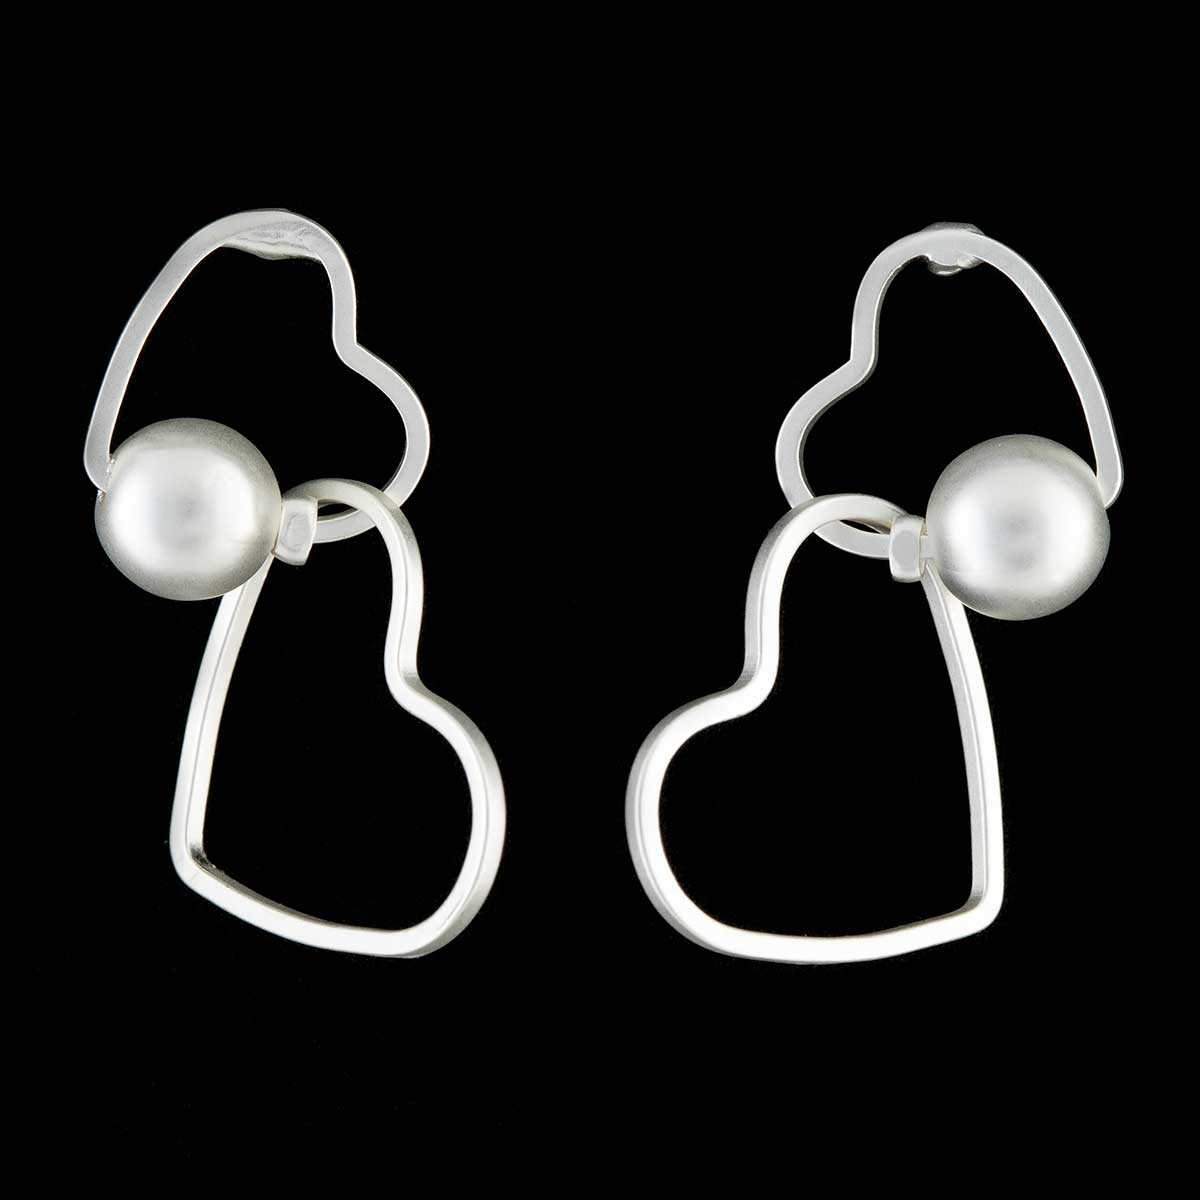 Satin Silver Double Heart Post Earrings